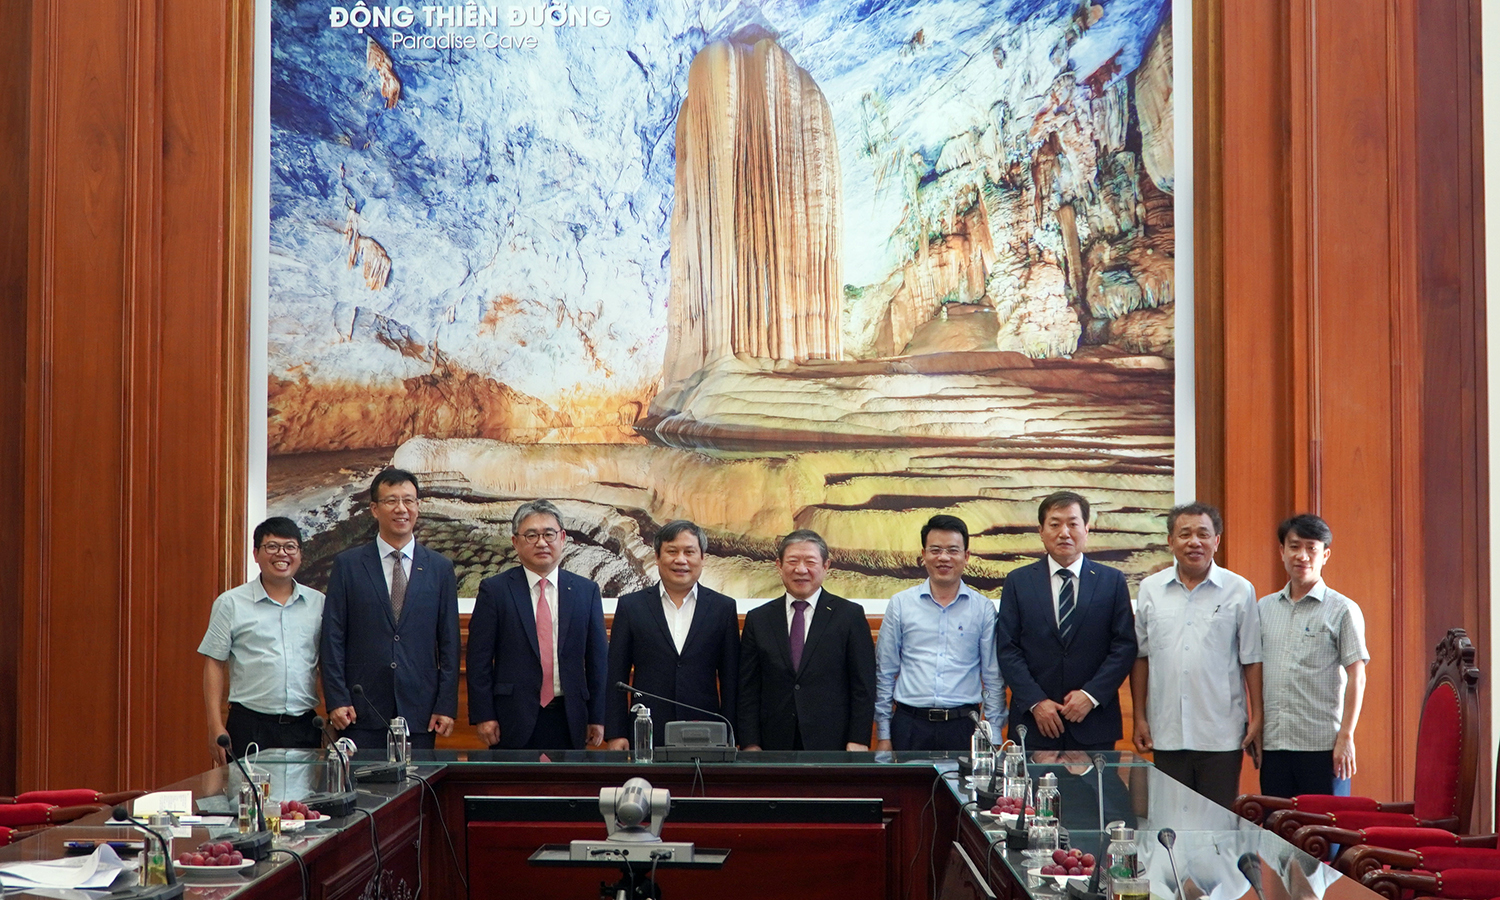 Đồng chí Bí thư Tỉnh ủy tiếp xã giao Tập đoàn Dohwa và Ngân hàng Shinhan